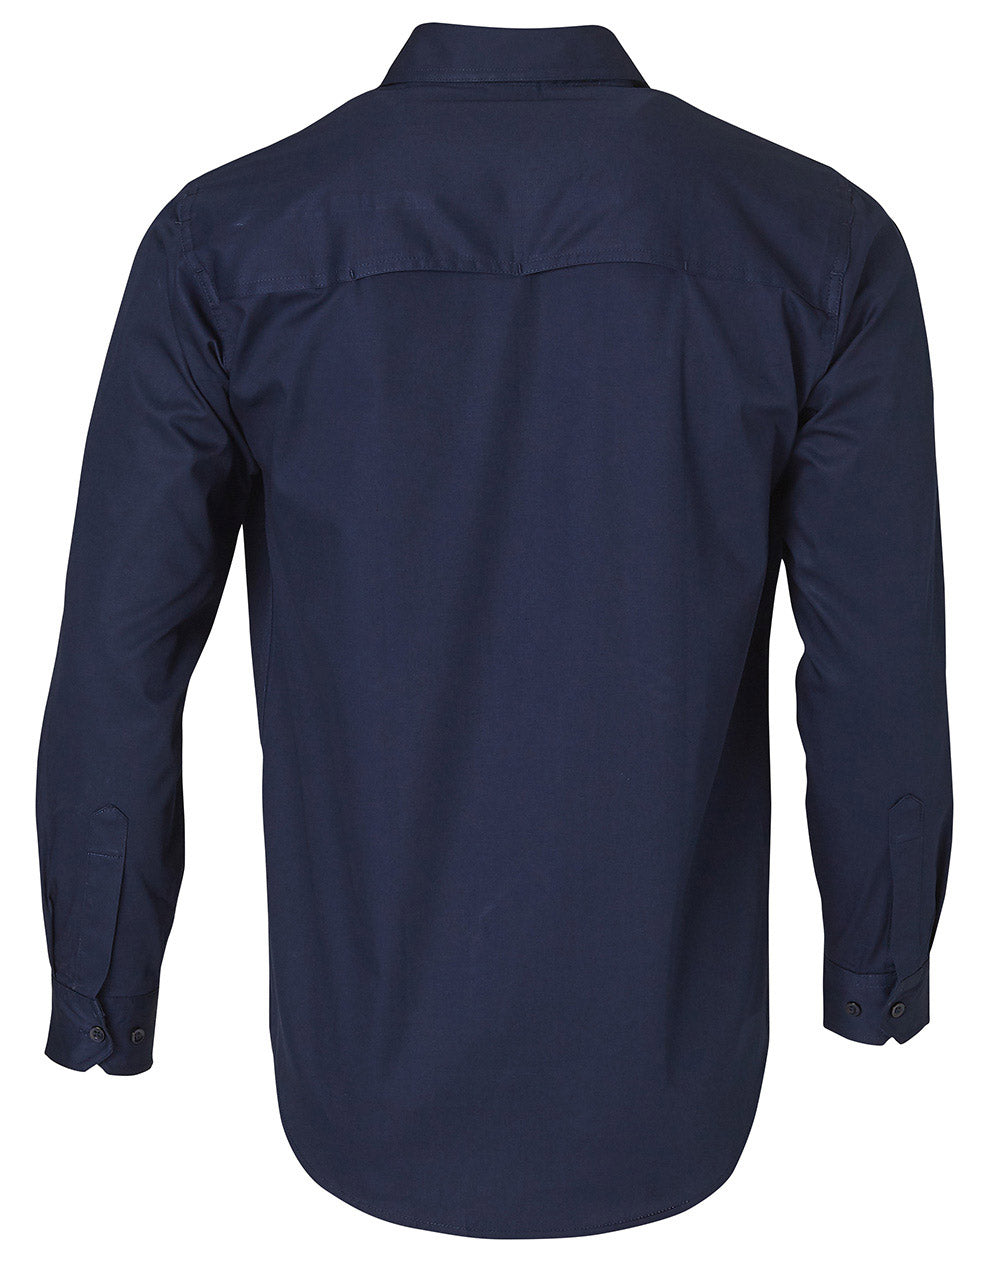 Winning Spirit-Cool-Breeze Long Sleeve Cotton Work Shirt-WT02